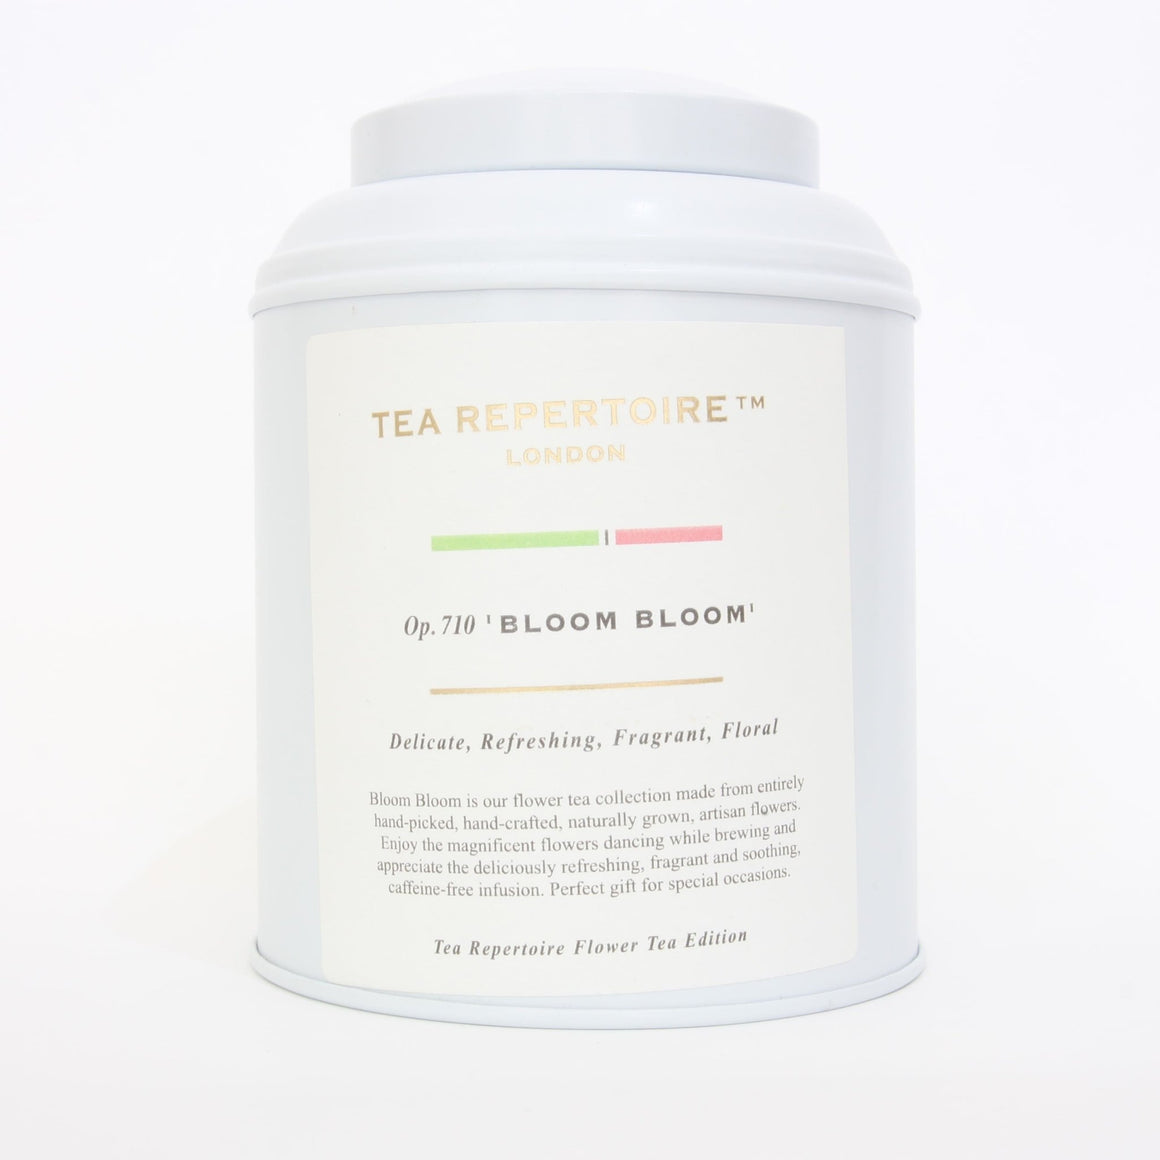 Bloom bloom - Tea Repertoire